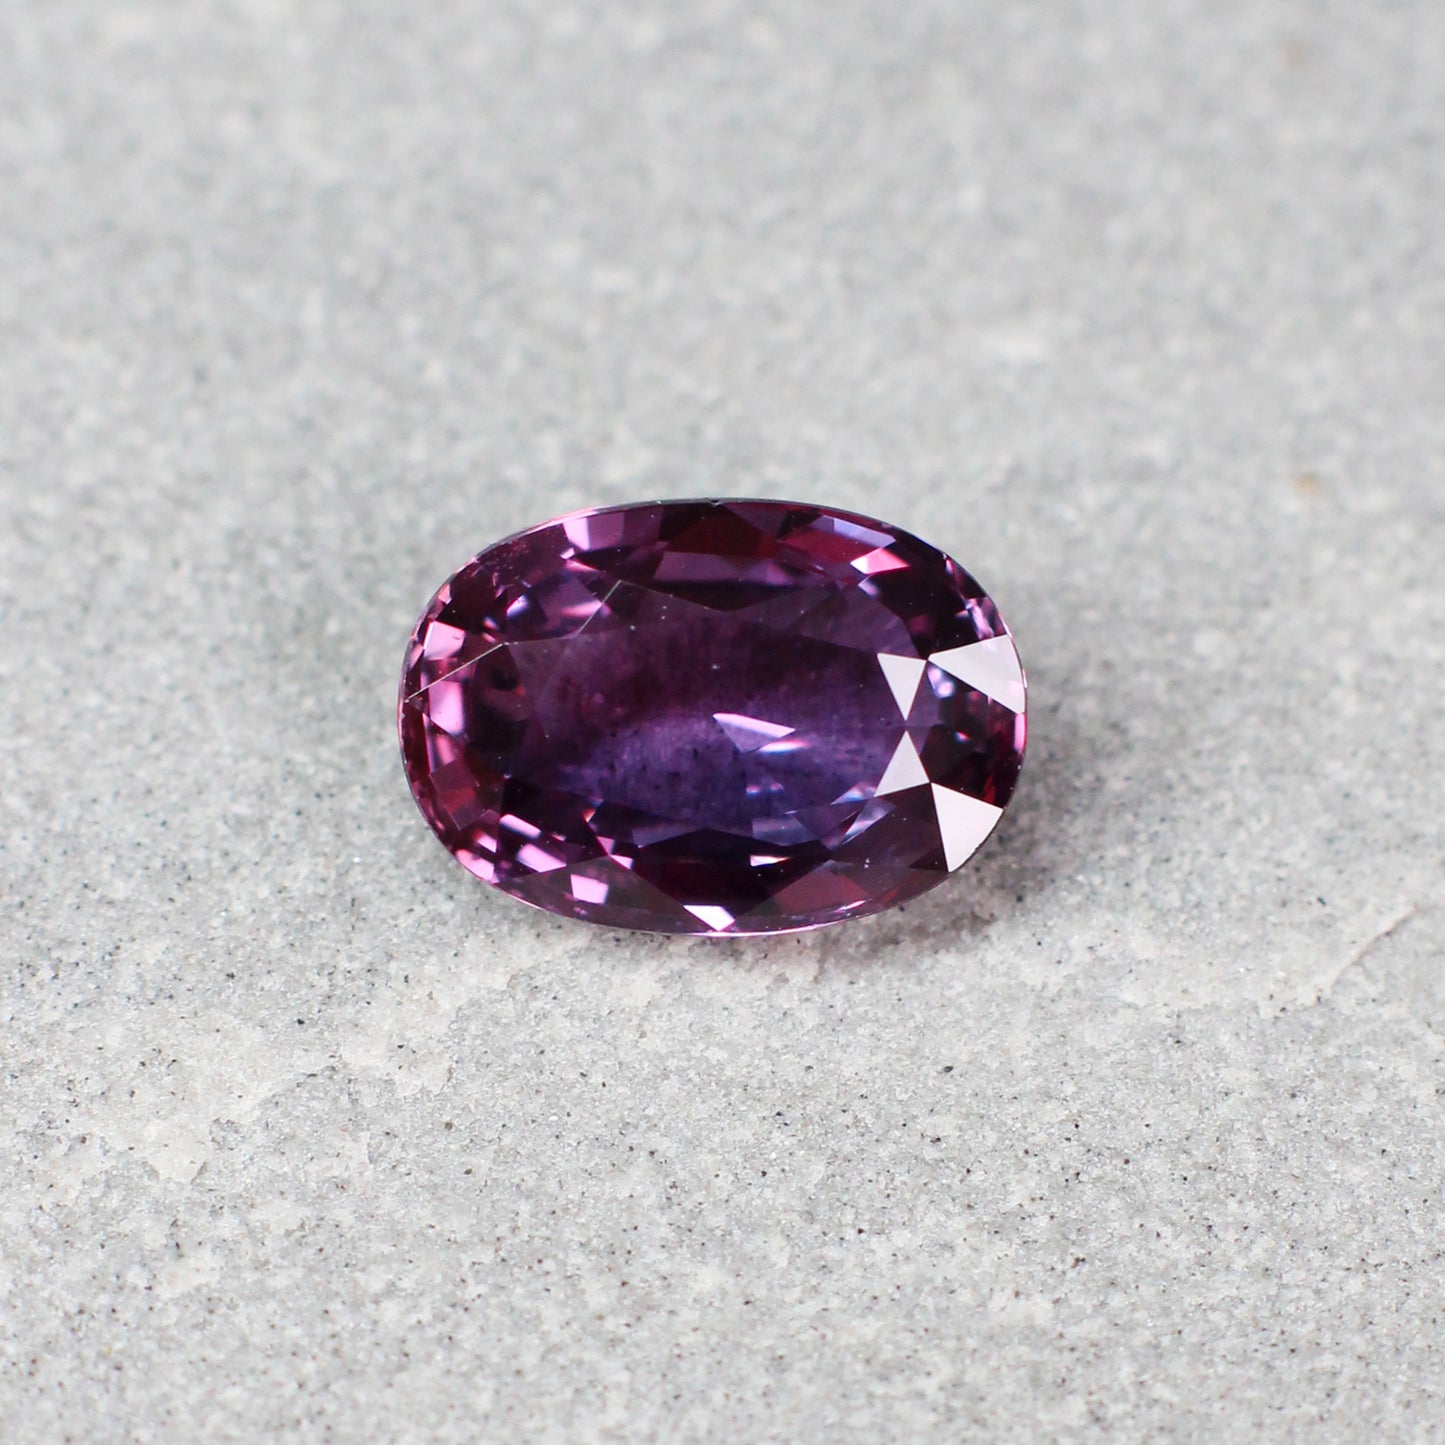 2.53ct Purple, Oval Sapphire, No Heat, Sri Lanka - 9.49 x 6.60 x 4.03mm